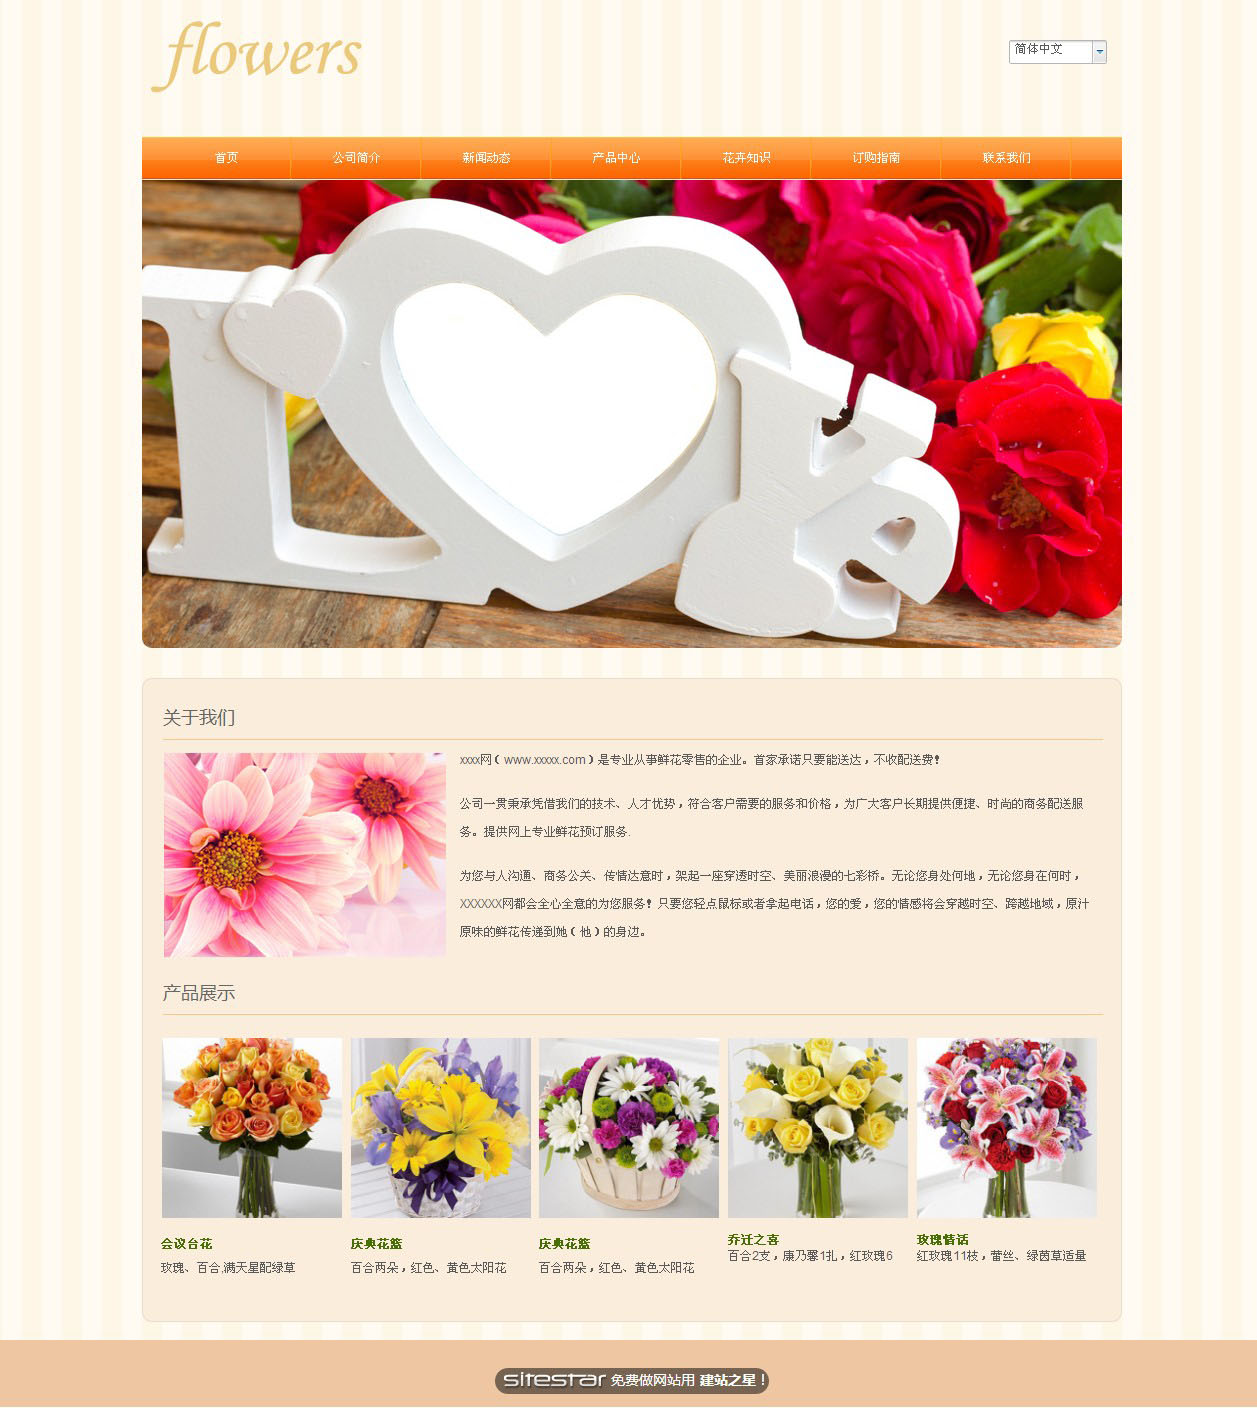 鲜花网站模板-flowers-7